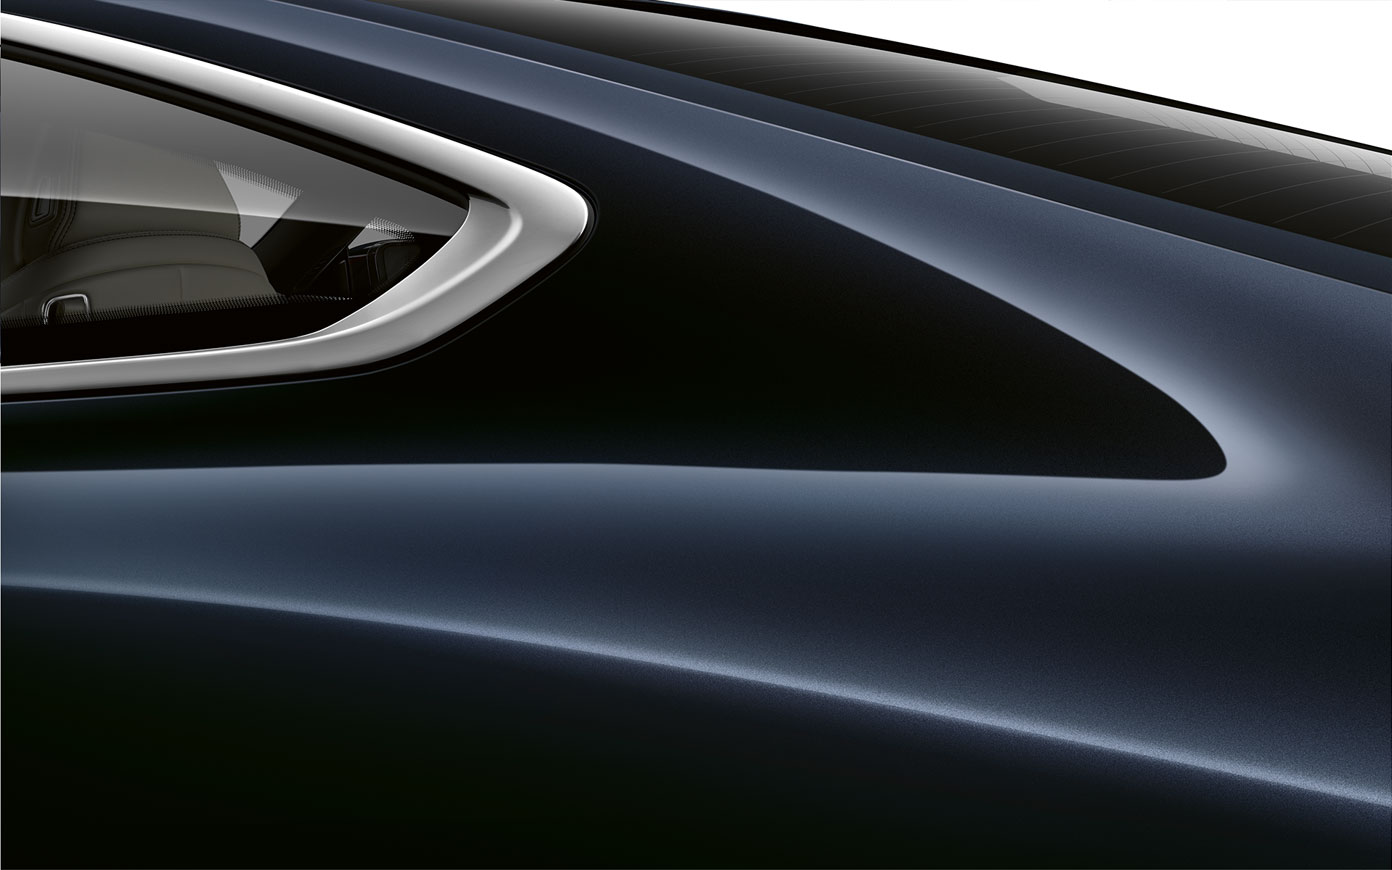 Ripresa da vicino del montante posteriore della BMW Serie 8 Coupé in Carbon Black metallizzato G15.